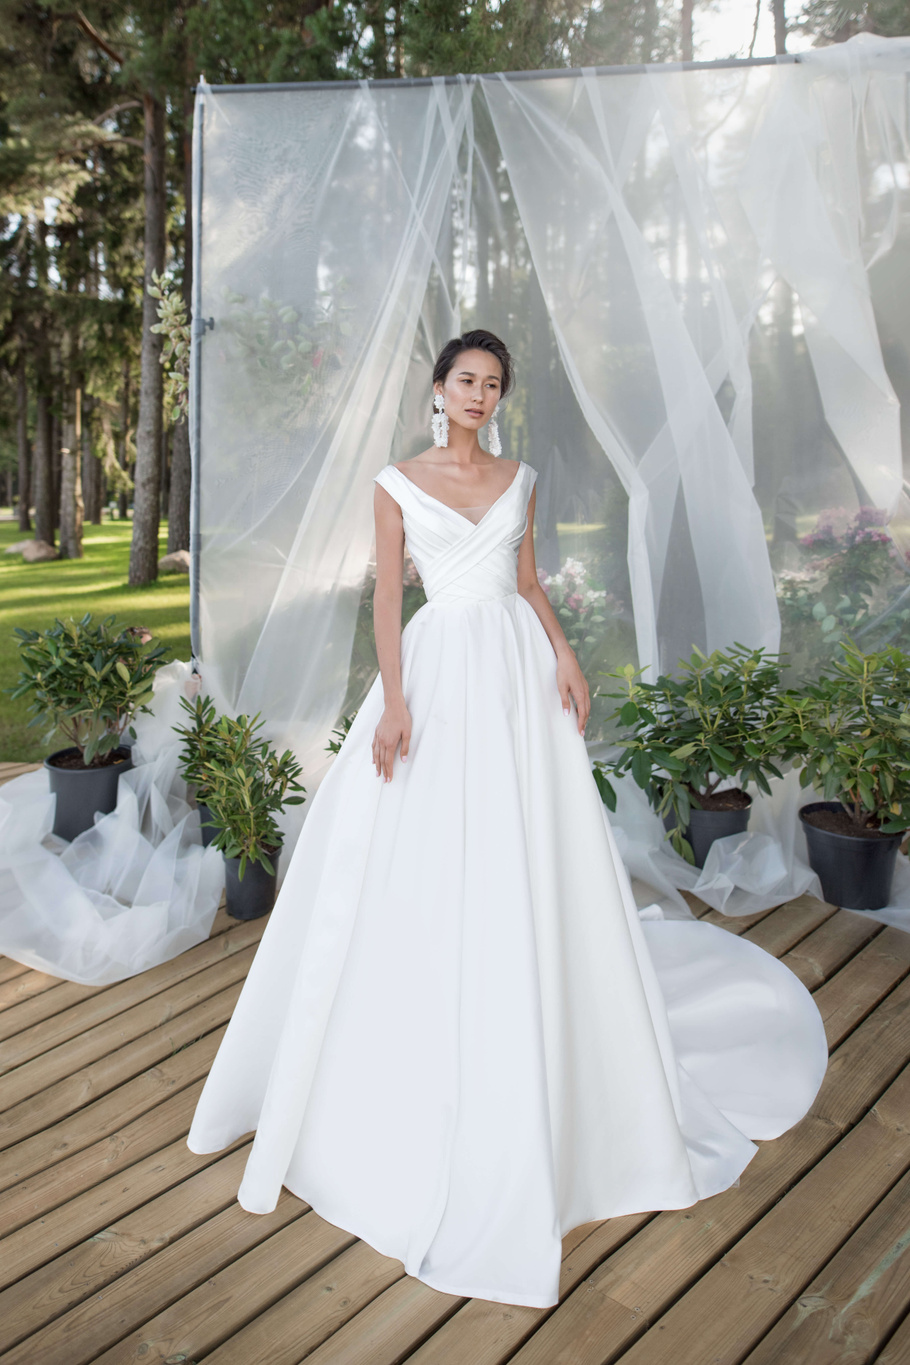 Купить свадебное платье «Рем» Бламмо Биамо из коллекции Нимфа 2020 года в Екатеринбурге